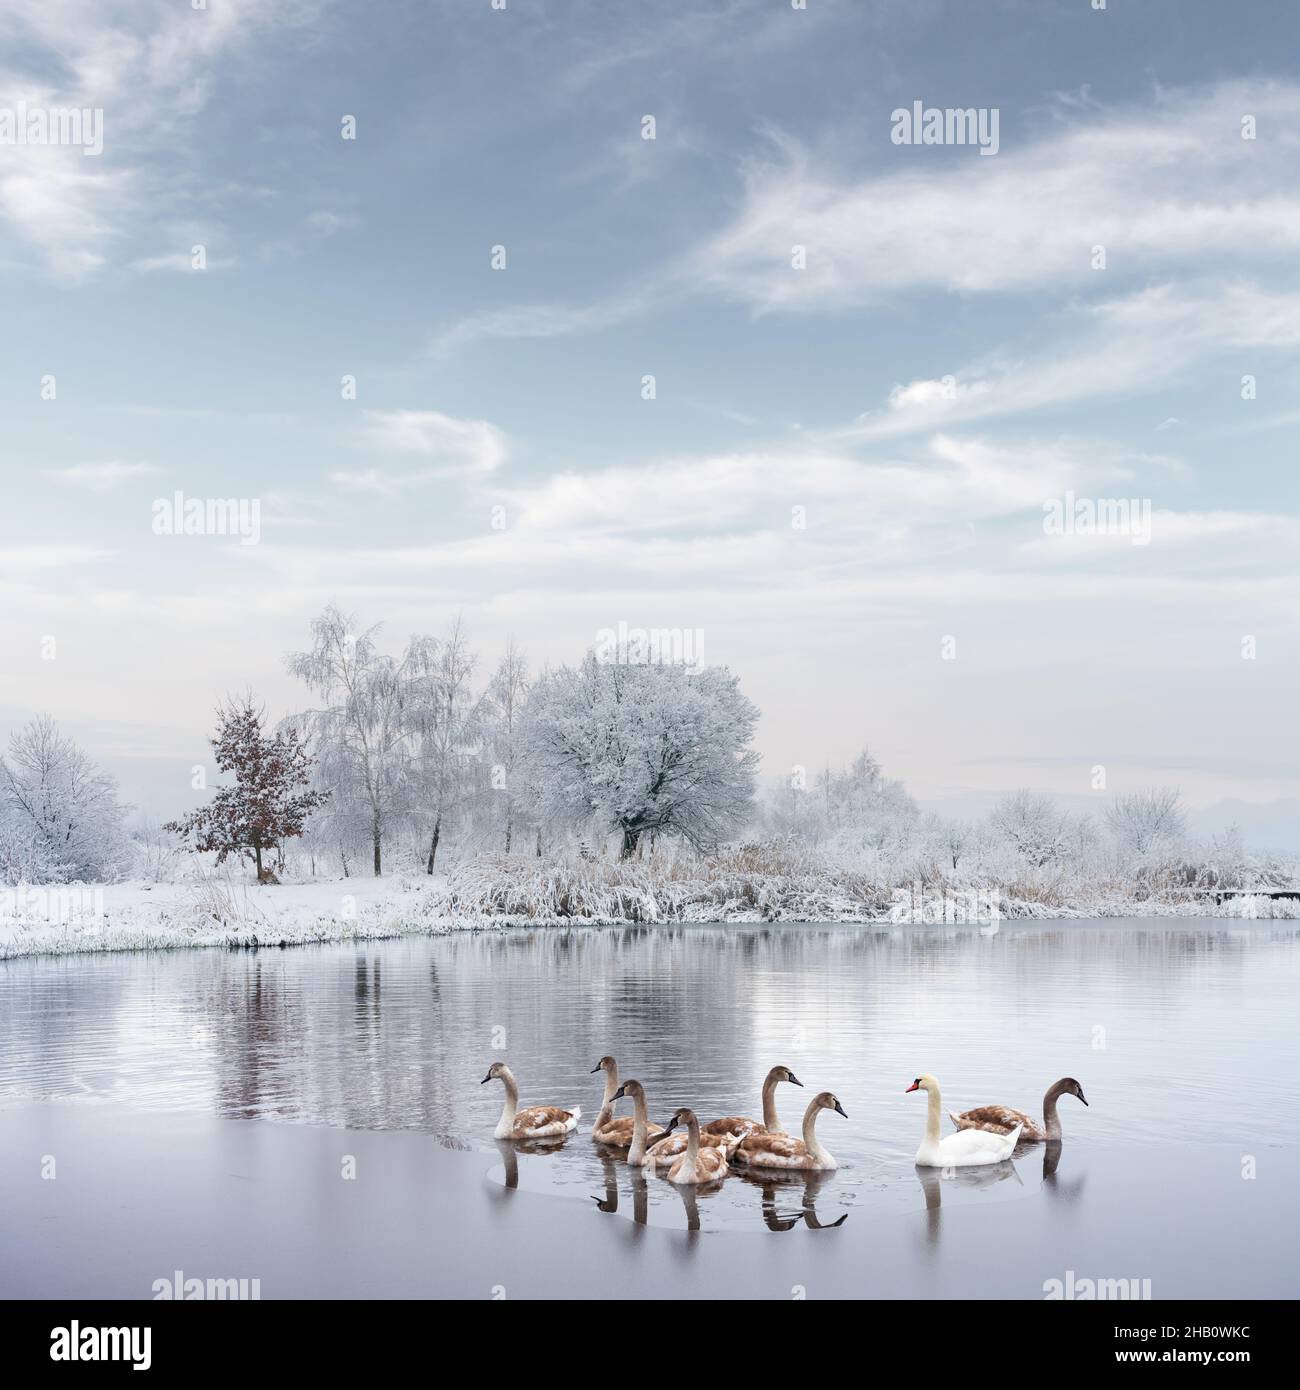 La famille des cygnes nage dans l'eau du lac en hiver au lever du soleil.Cygne adulte blanc et petits poussins gris dans de l'eau gelée le matin.Des arbres enneigés et givré sur fond.Photographie d'animaux Banque D'Images